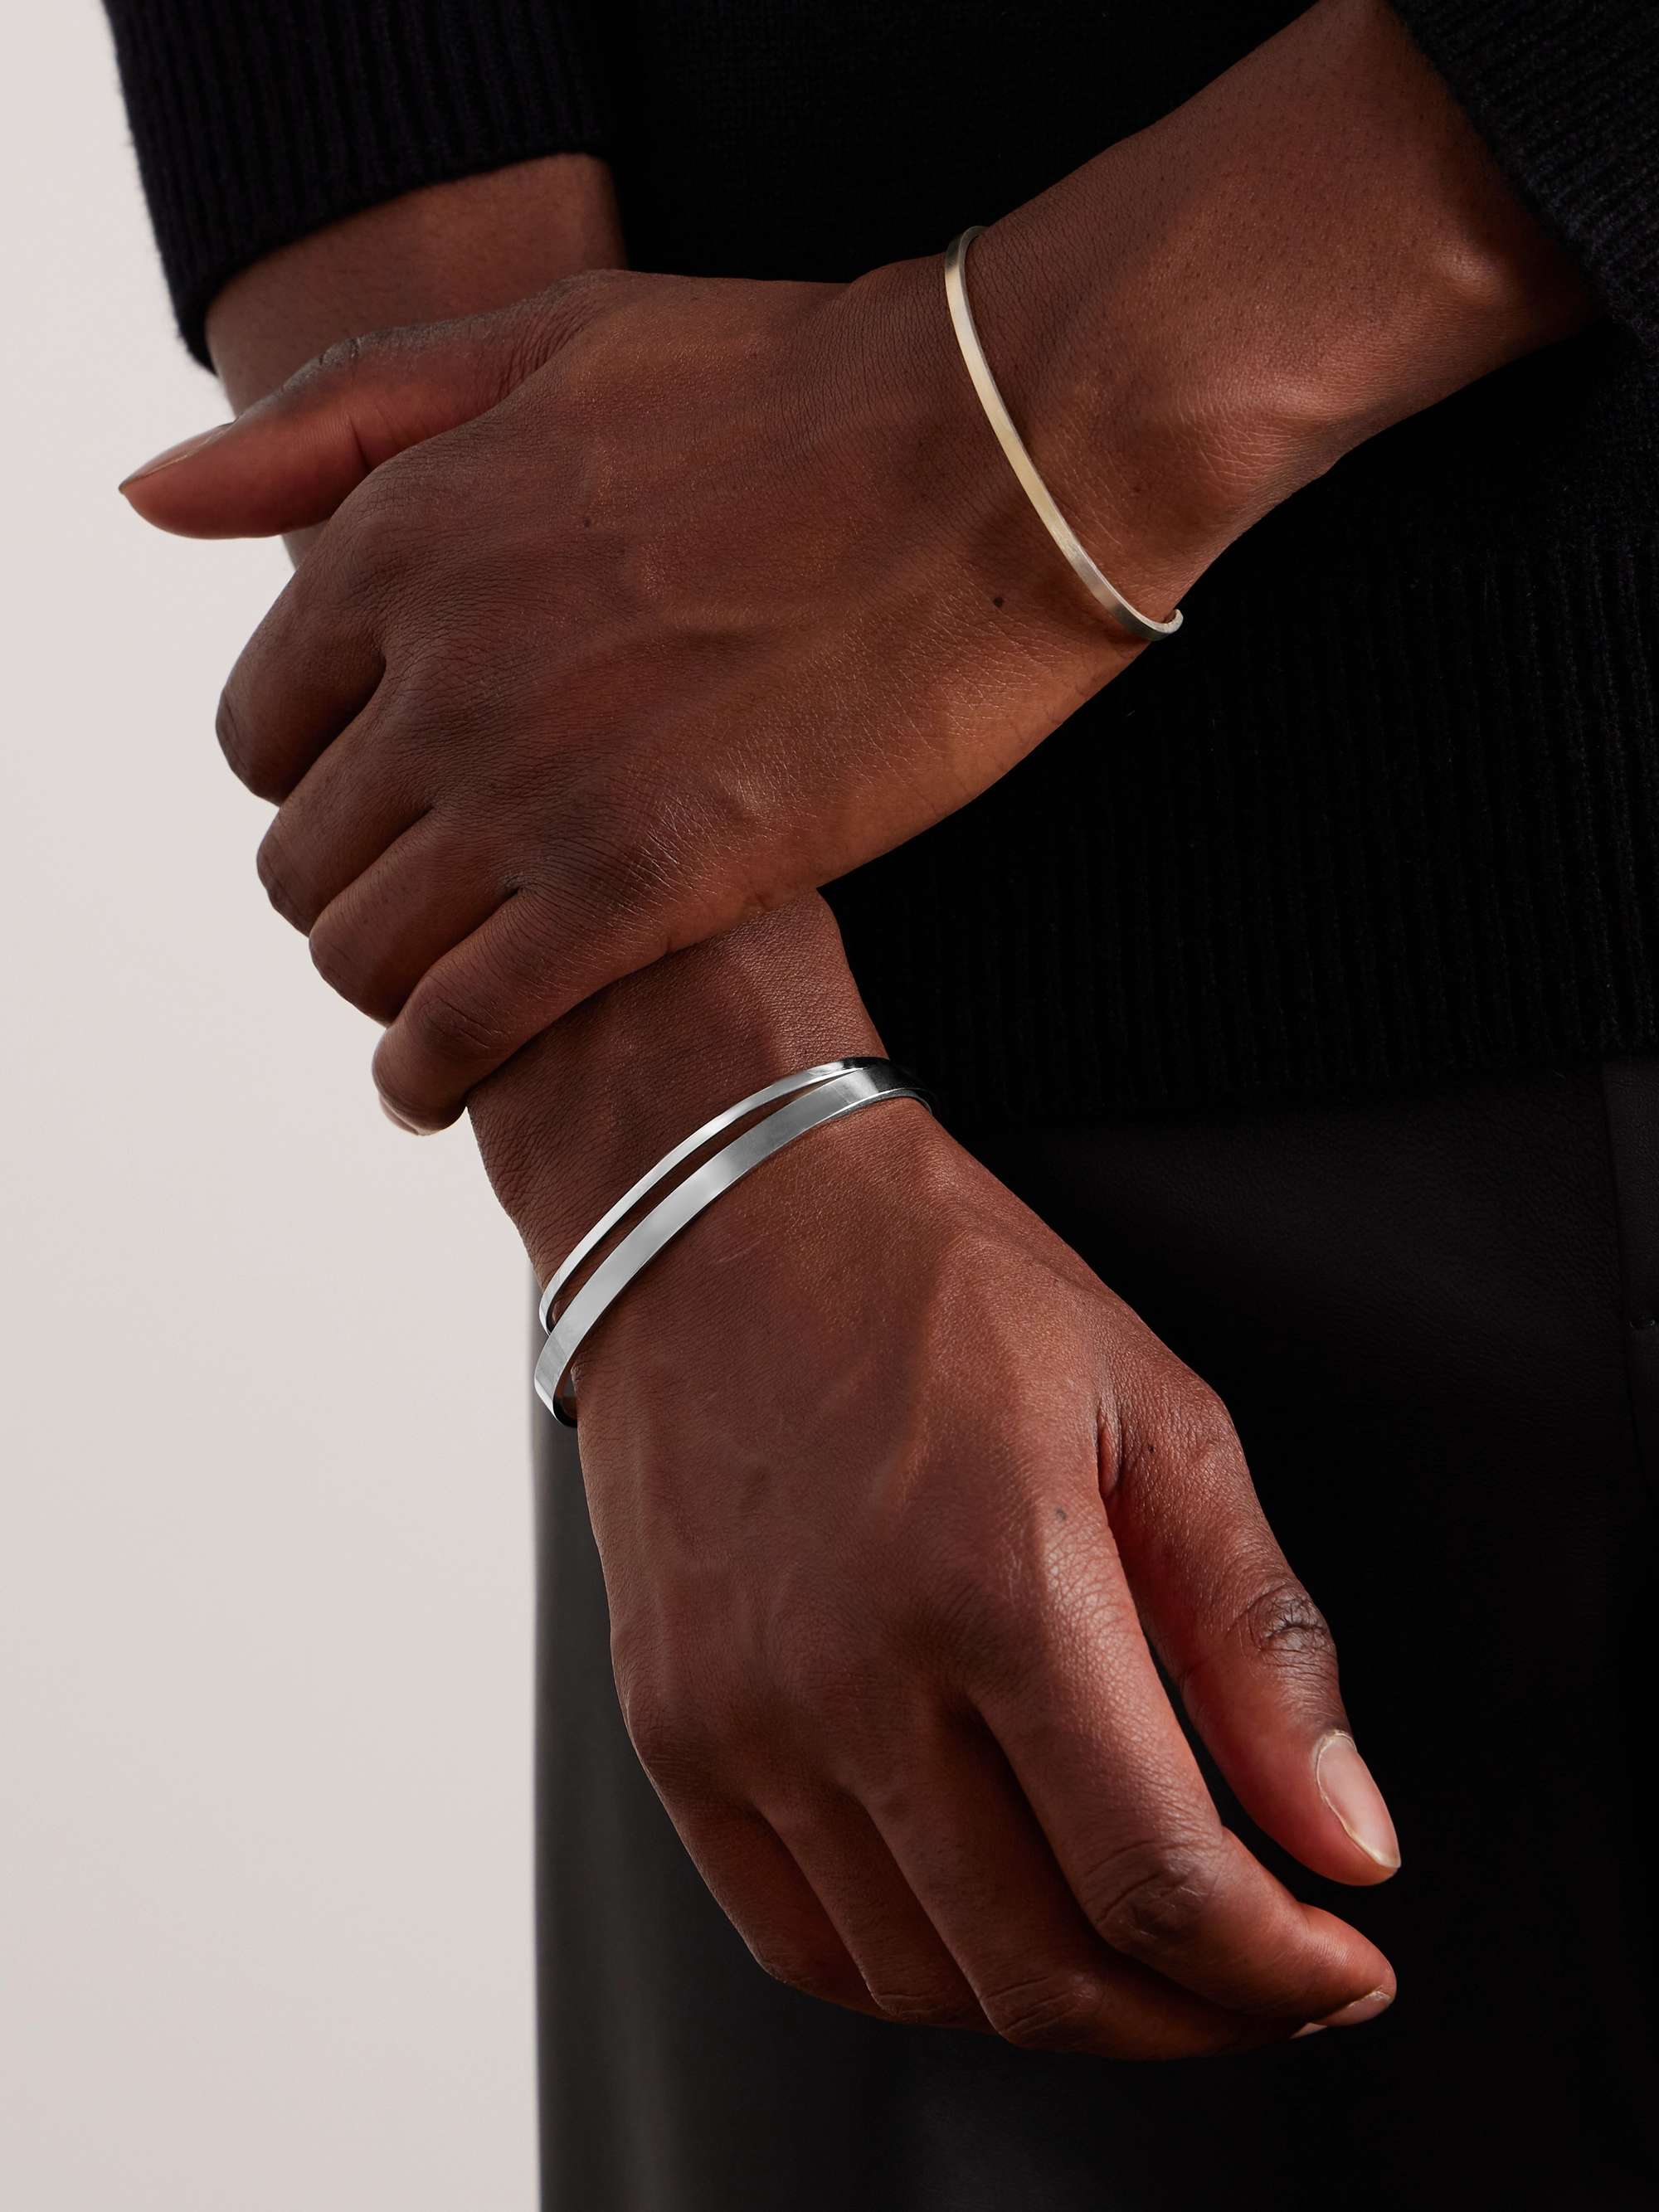 ALICE MADE THIS P2 Bancroft Polished Sterling Silver Bracelet for Men | MR  PORTER